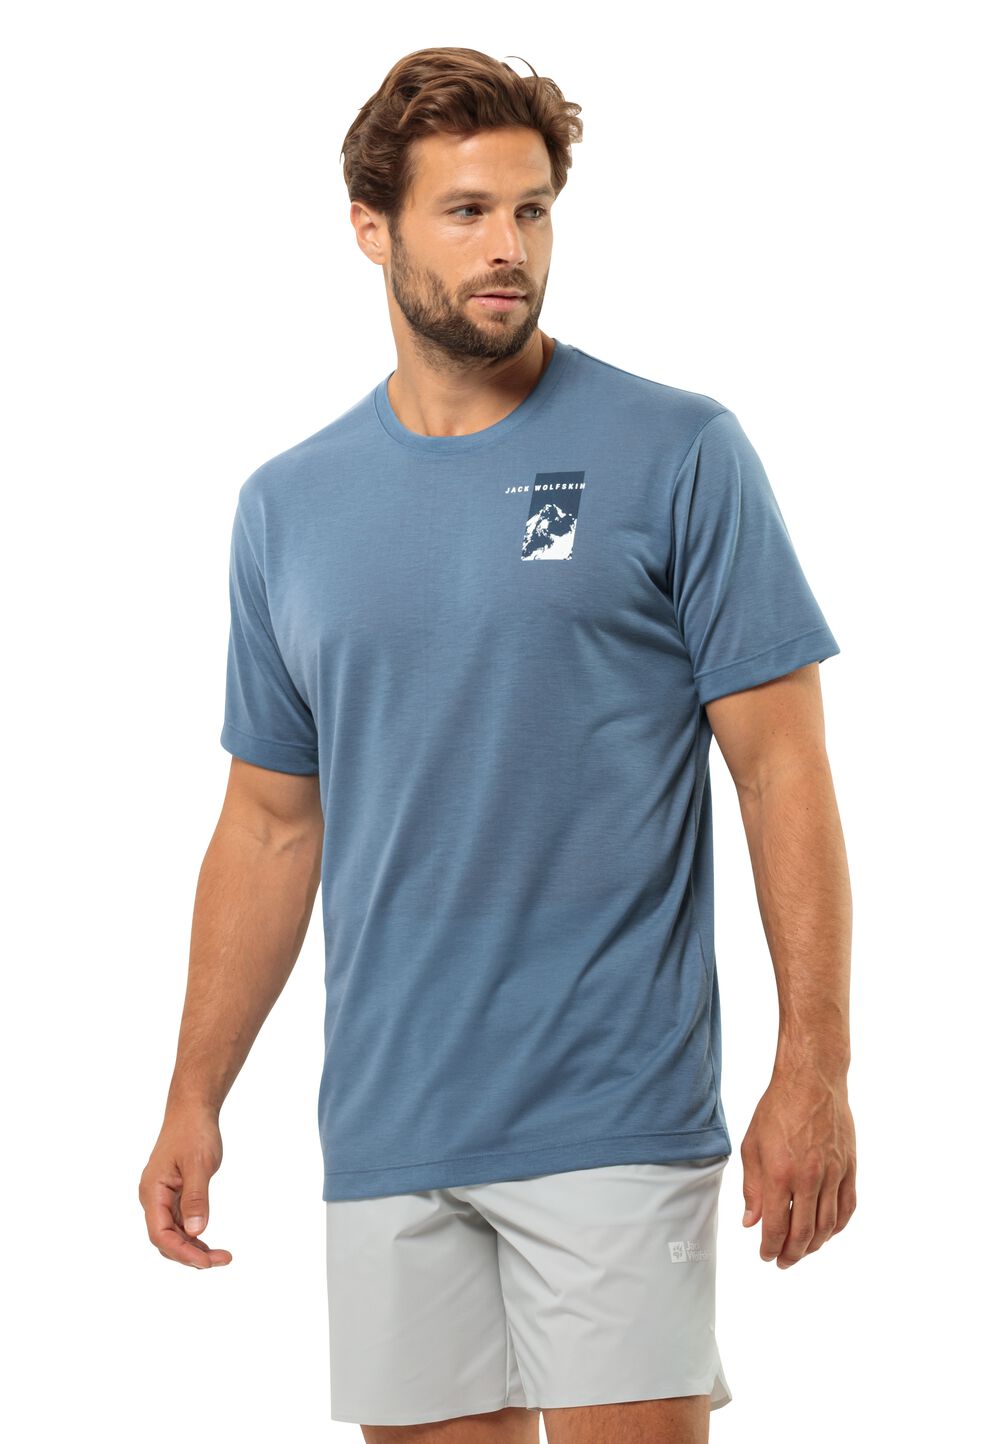 Jack Wolfskin Funktionsshirt Herren Vonnan S/S Graphic T-Shirt Men XXL elemental blue elemental blue von Jack Wolfskin